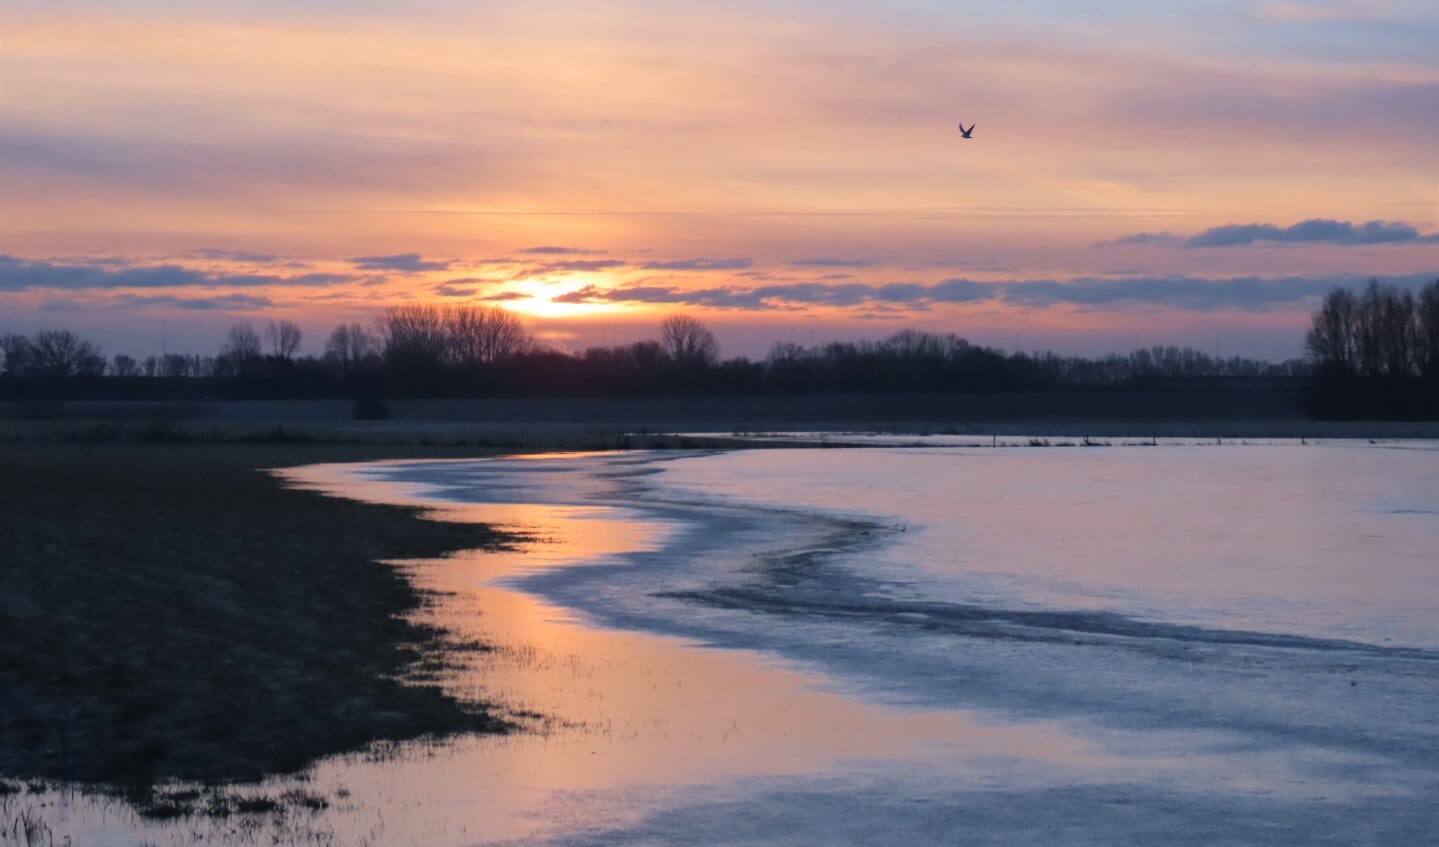 de dag begon met een mooie zonsopkomst en dat bij hoog water in de uiterwaarden tussen Ewijk en Winssen in